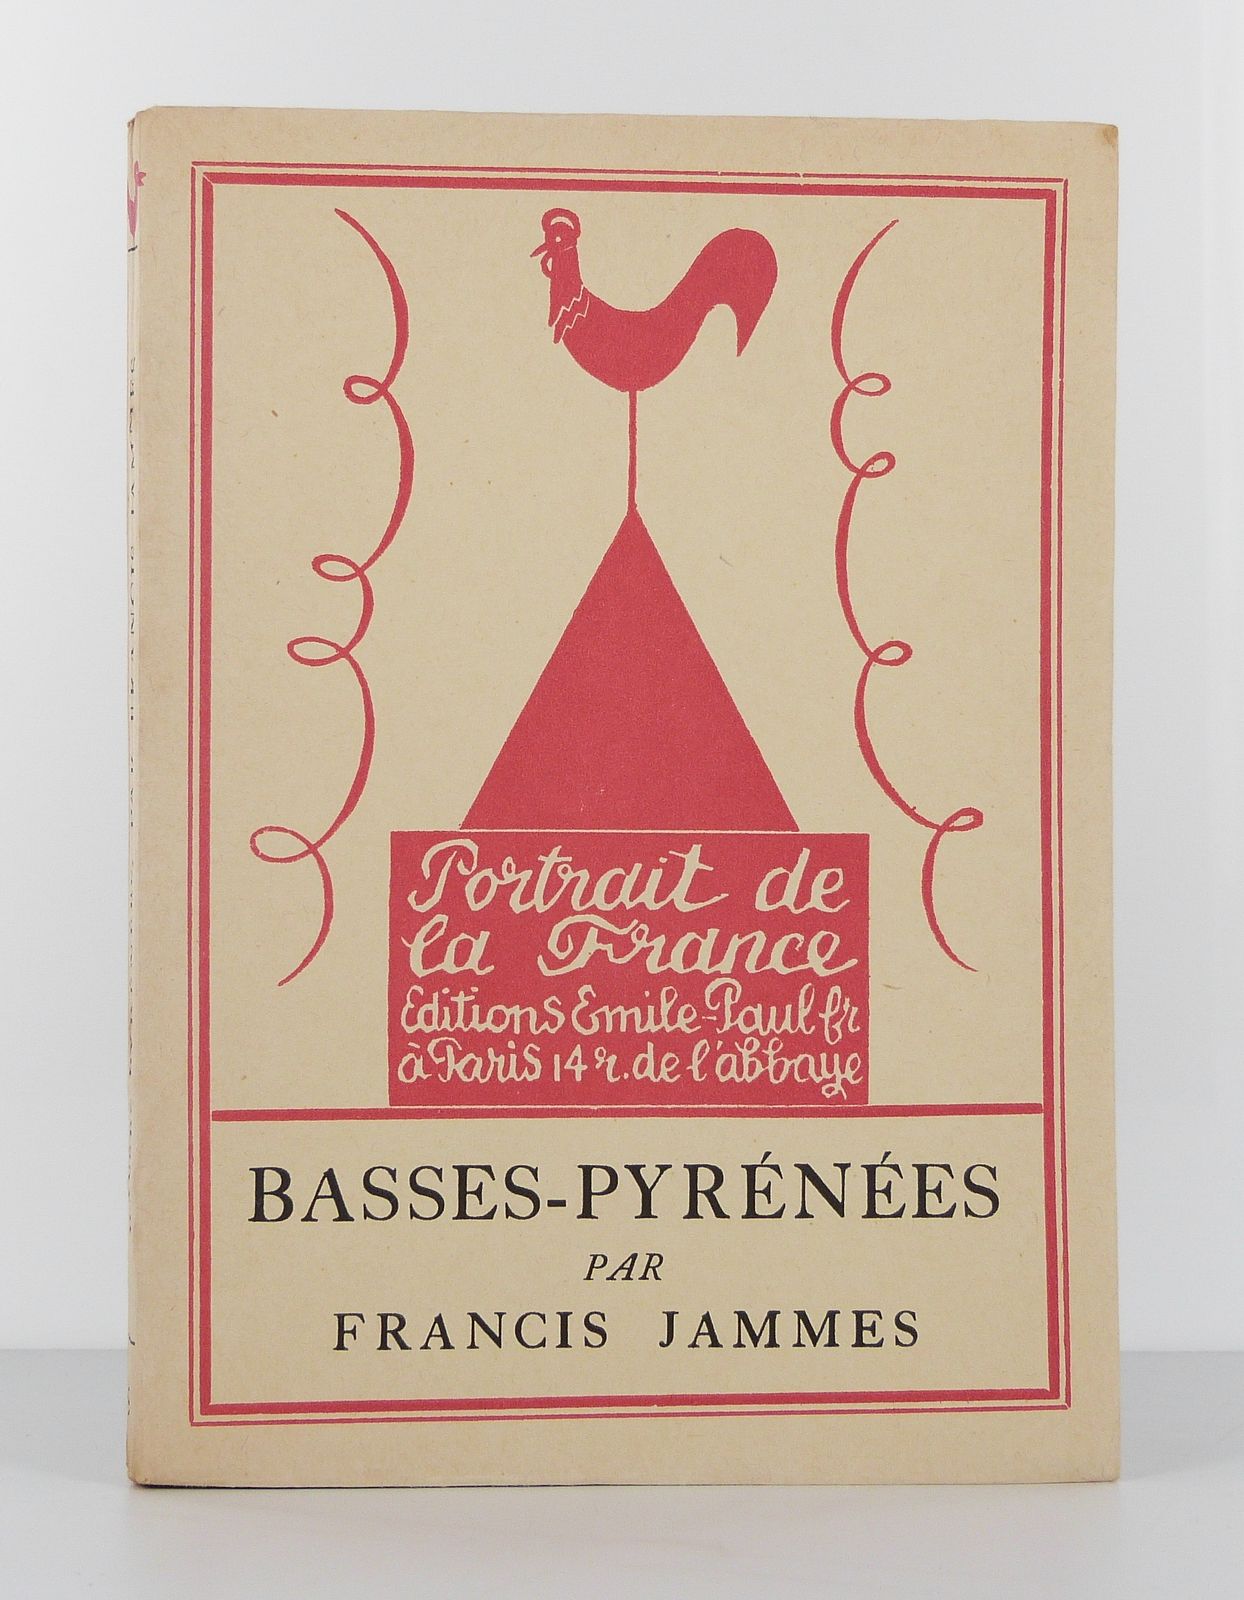 Basses-Pyrénées (Portrait de la France)